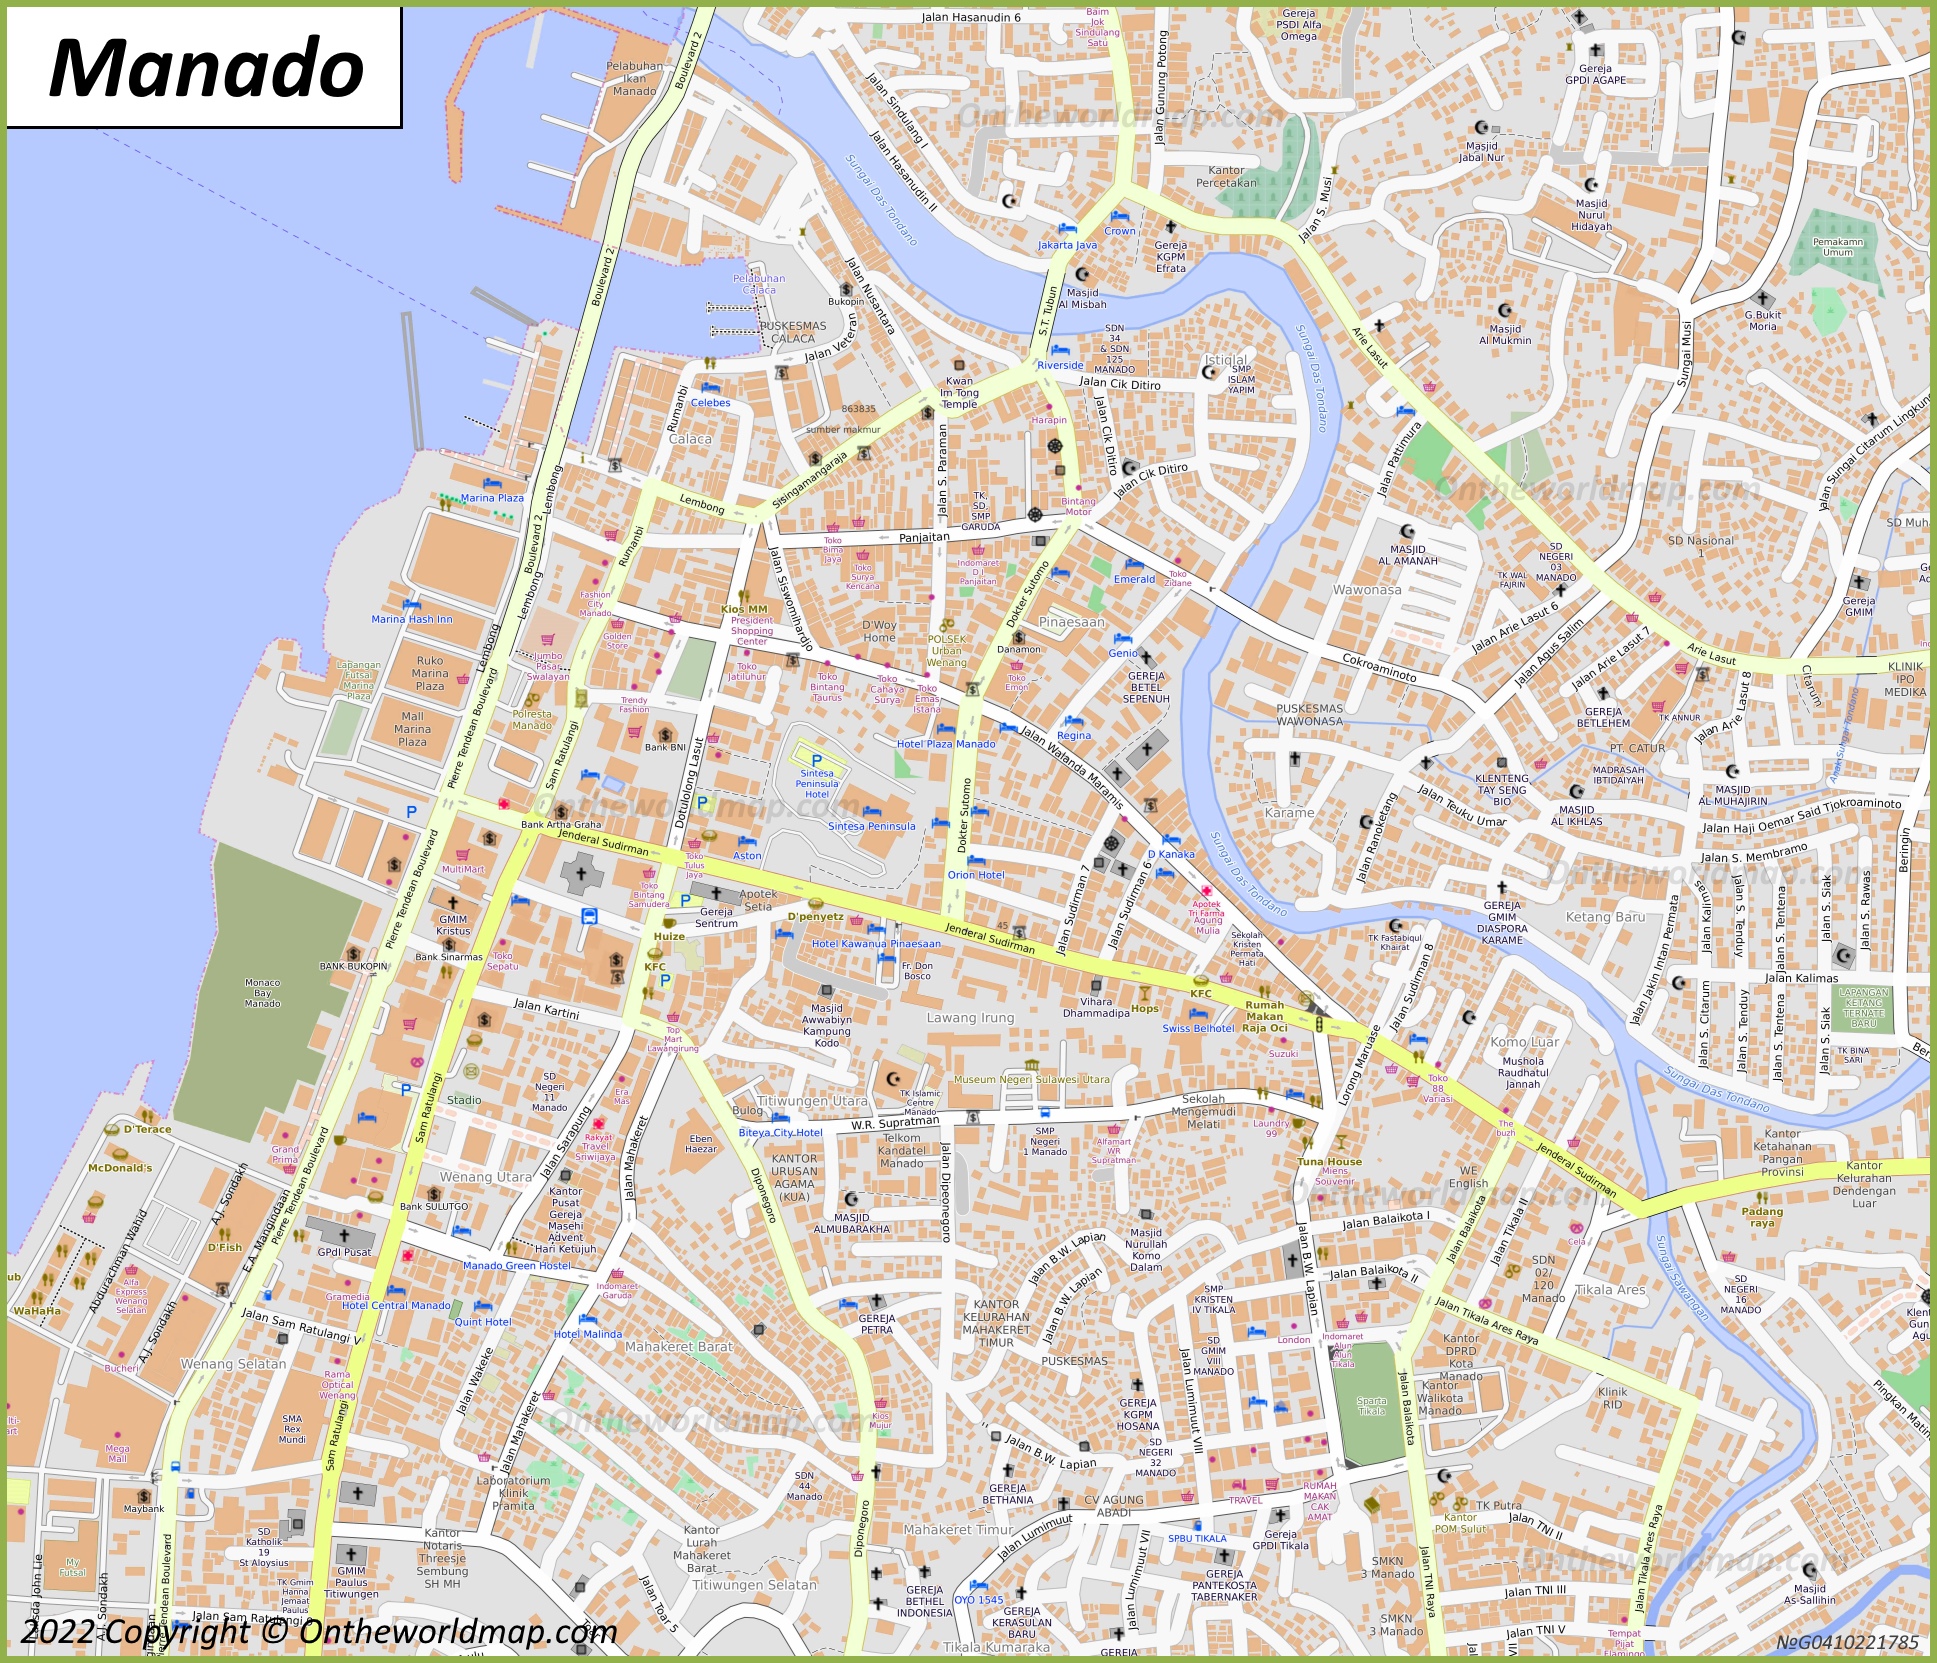 Manado City Centre Map